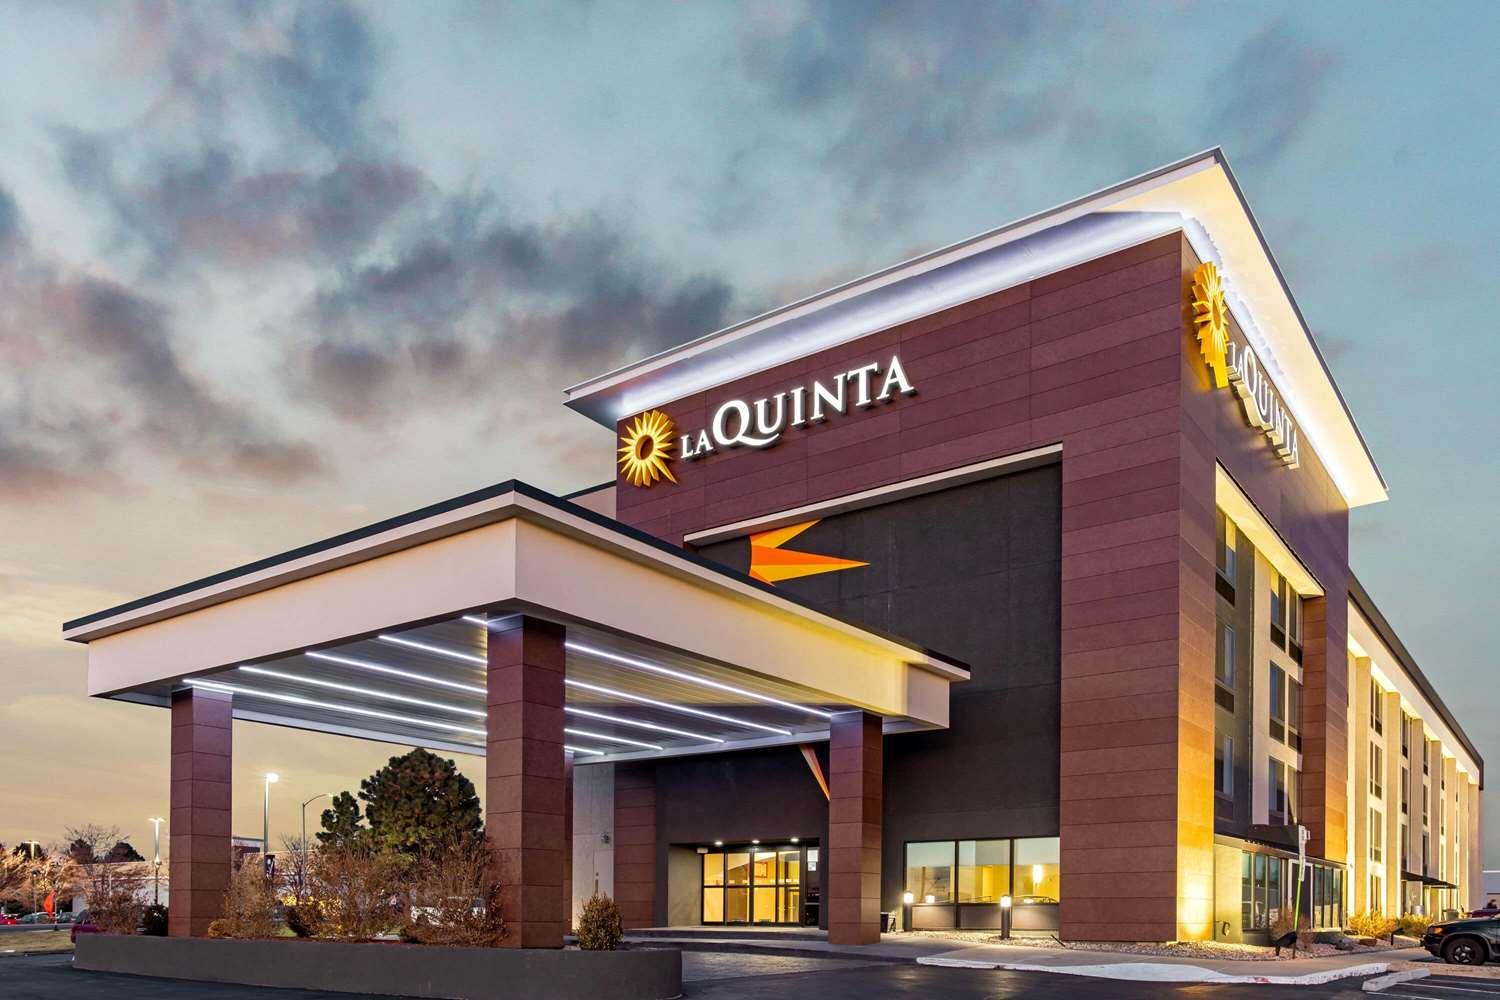 La Quinta Inn & Suites by Wyndham Denver Aurora Medical in Aurora, CO